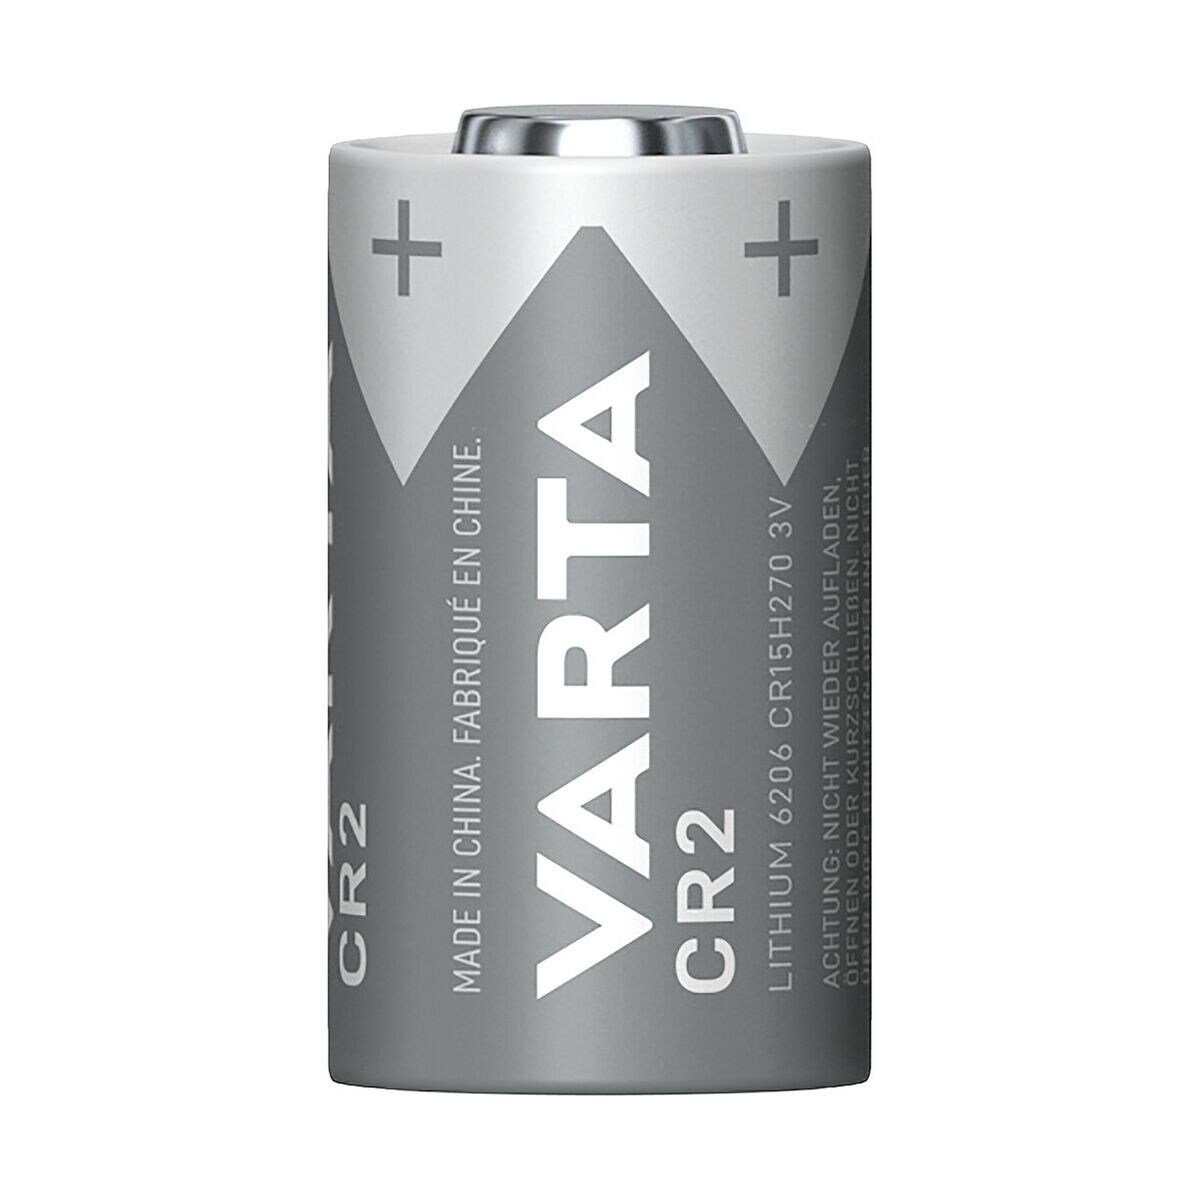 VARTA 3 (3 V, Photo St), Lithium Fotobatterie, Lithium 1 V, / CR2 CR15H270,